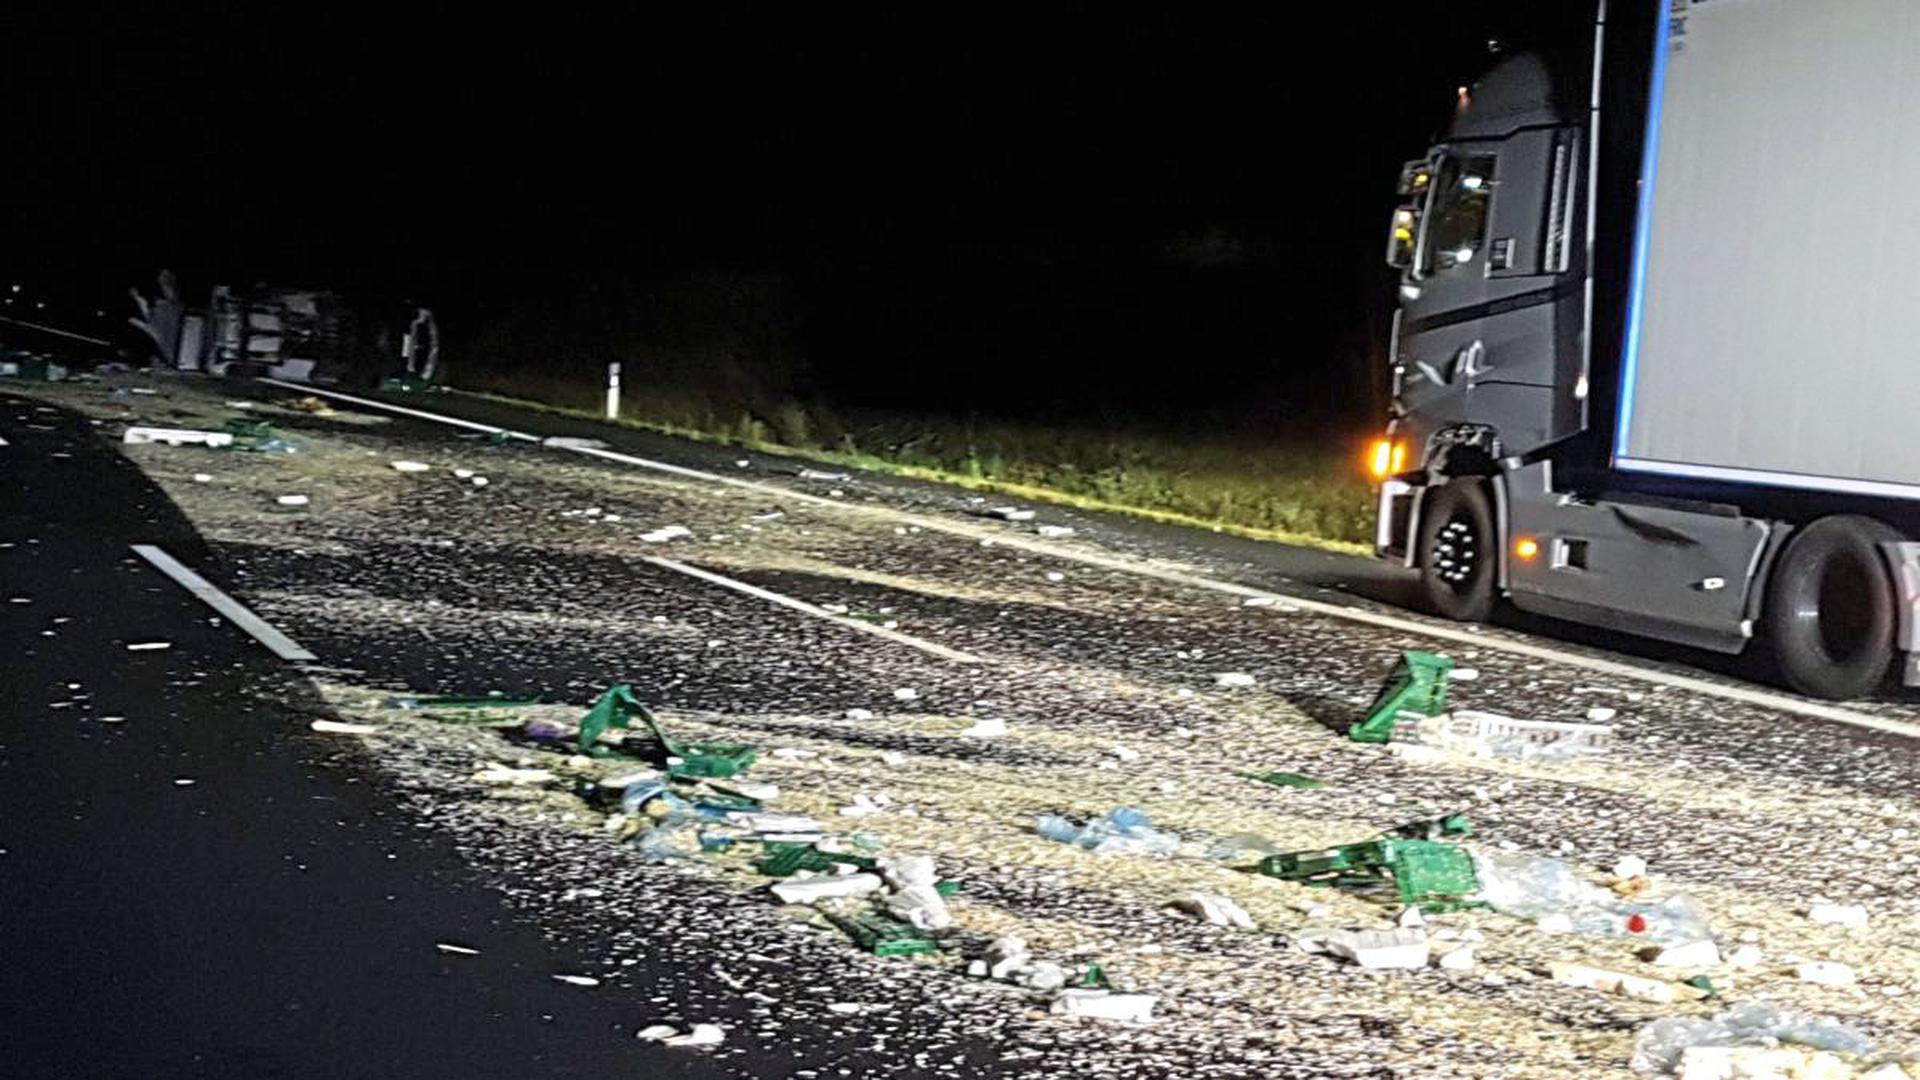 Bei dem Unfall auf der A8 kippte ein Klein-Lastwagen um und verteilte seine Ladung auf der Fahrbahn.